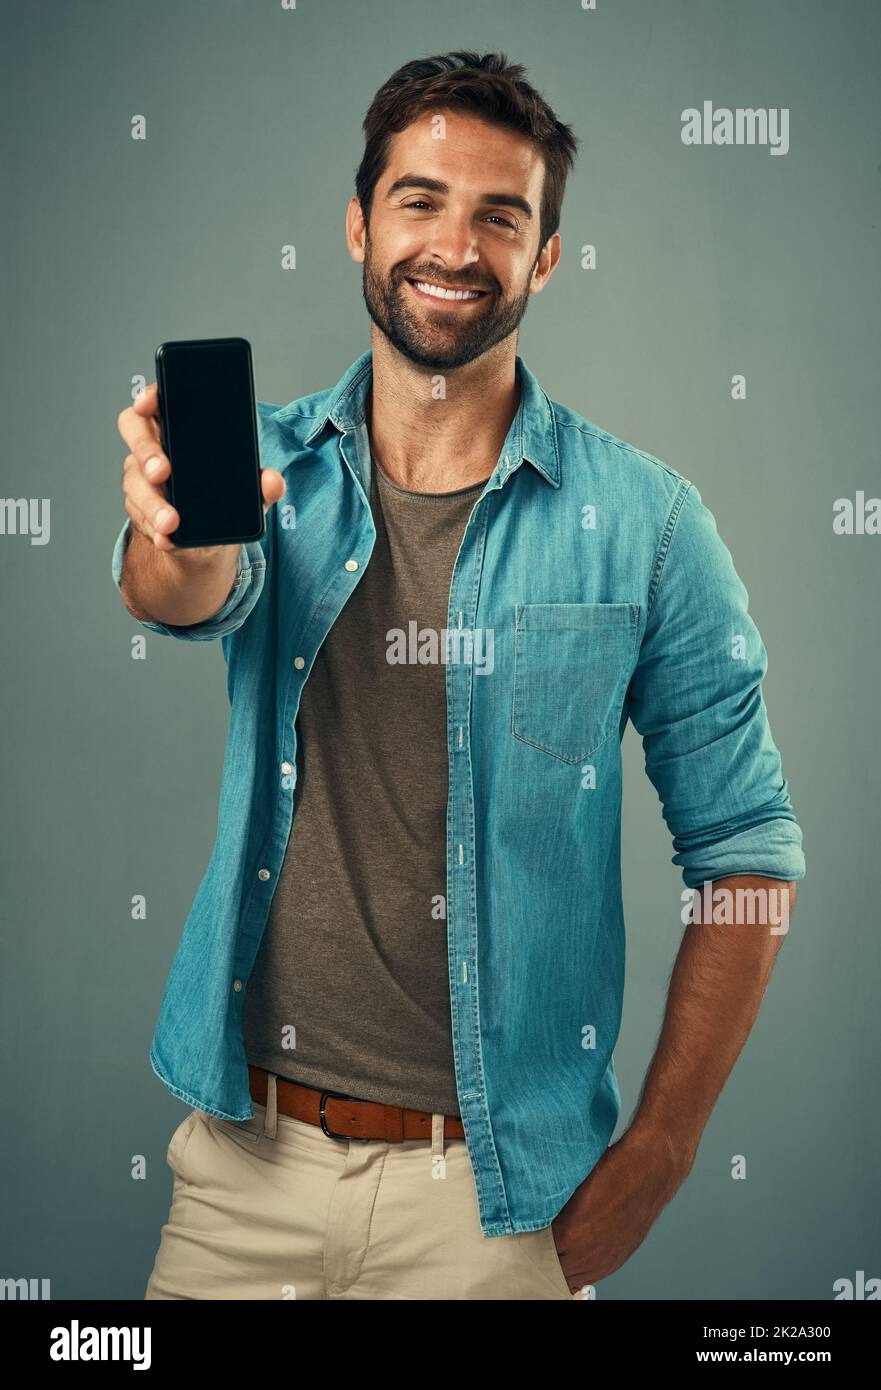 Jetez un œil et dites-moi ce que vous pensez. Portrait studio d'un beau jeune homme tenant un téléphone portable avec un écran vierge sur fond gris. Banque D'Images